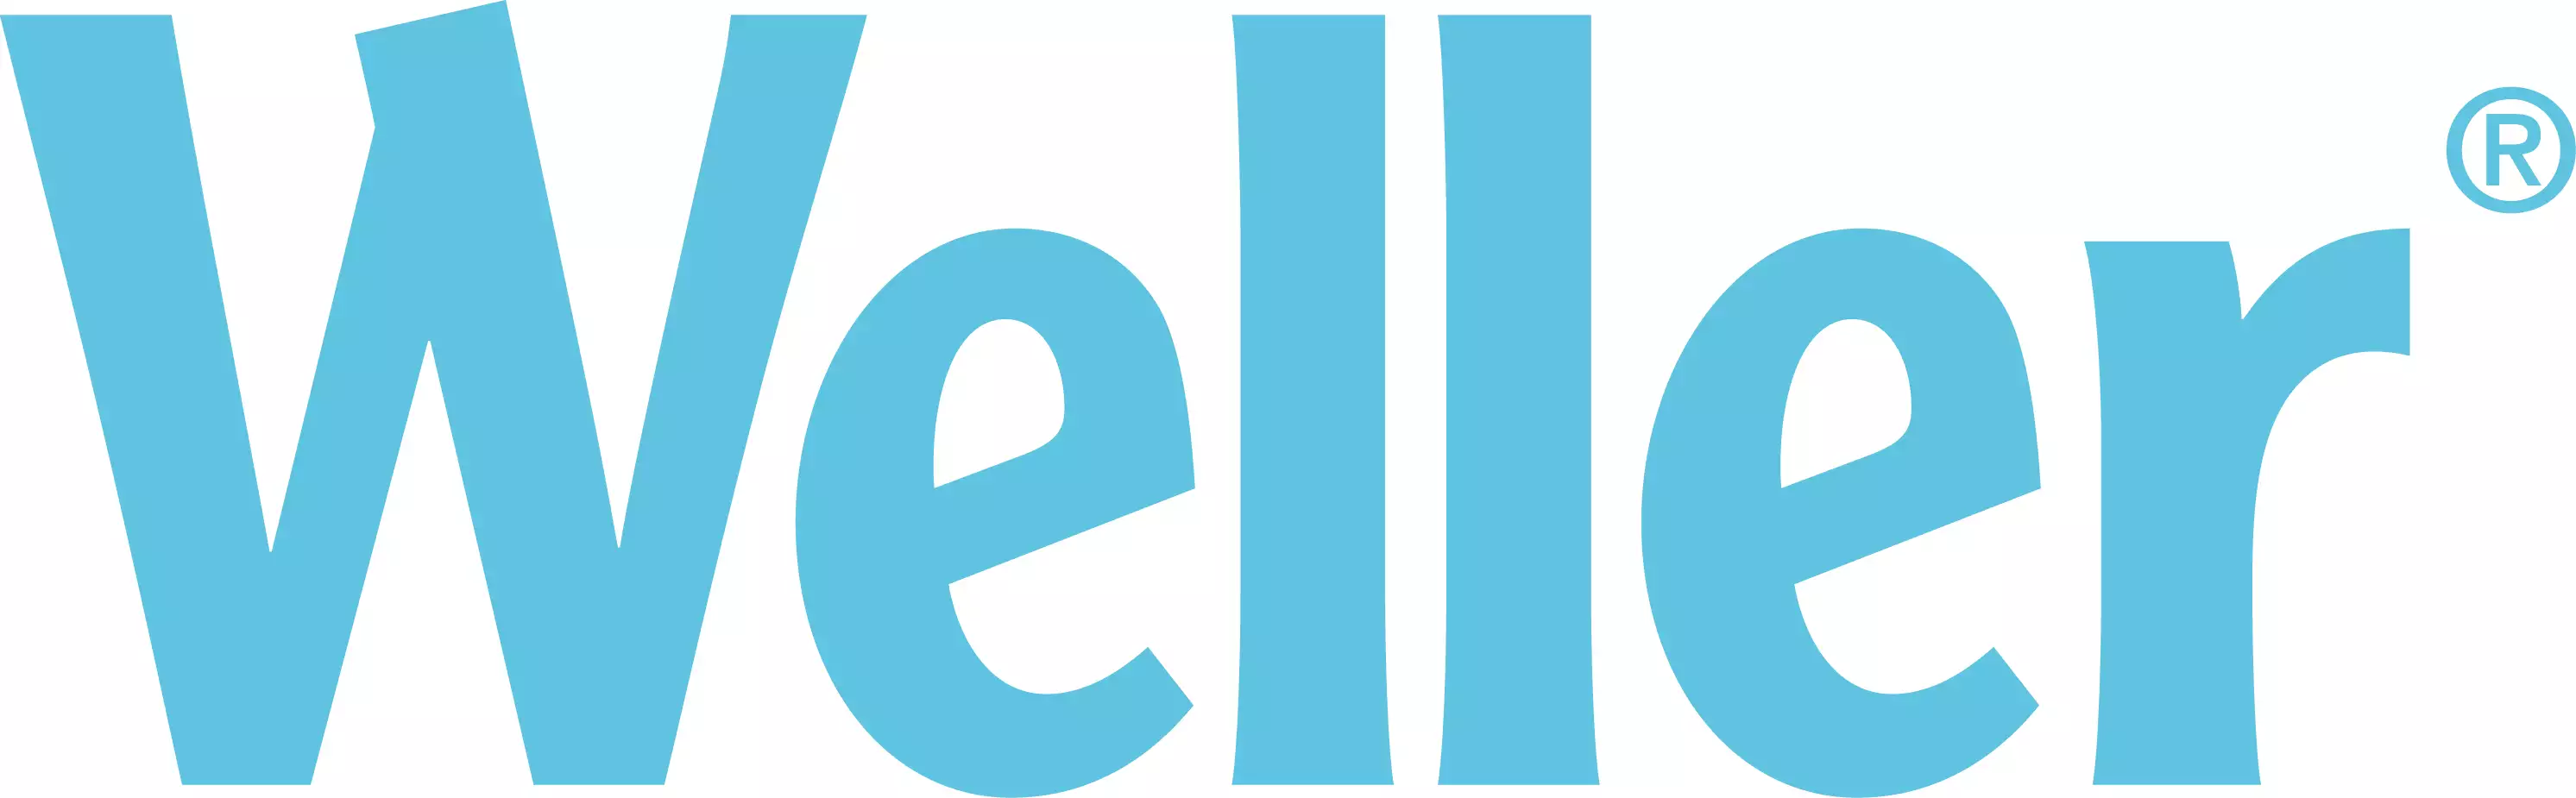 Logo de la marque Weller